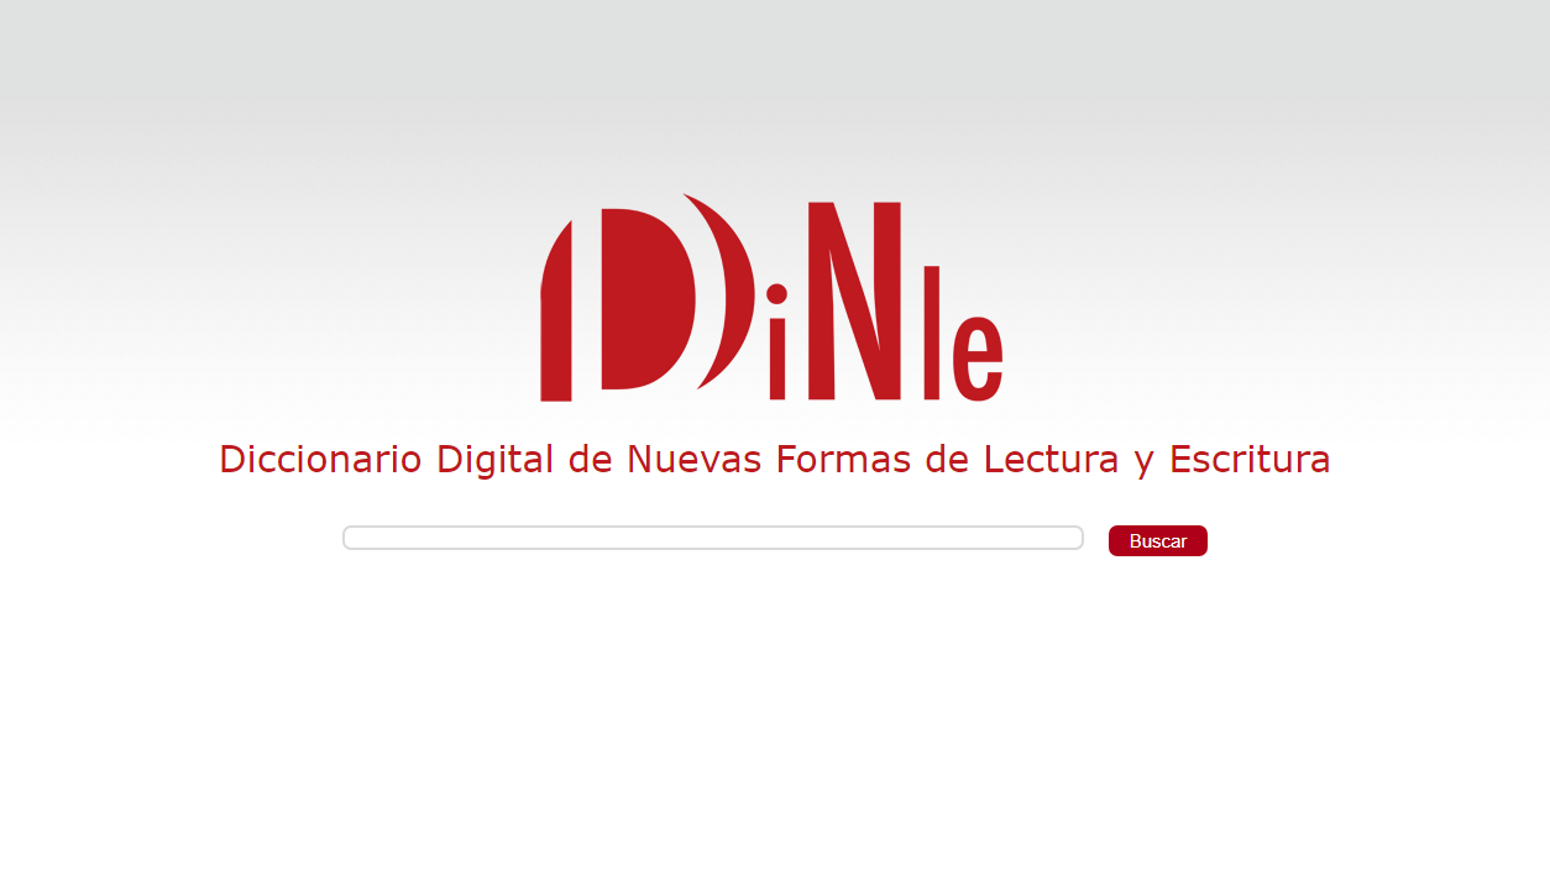 Diccionario Digital de Nuevas Formas de Lectura y Escritura